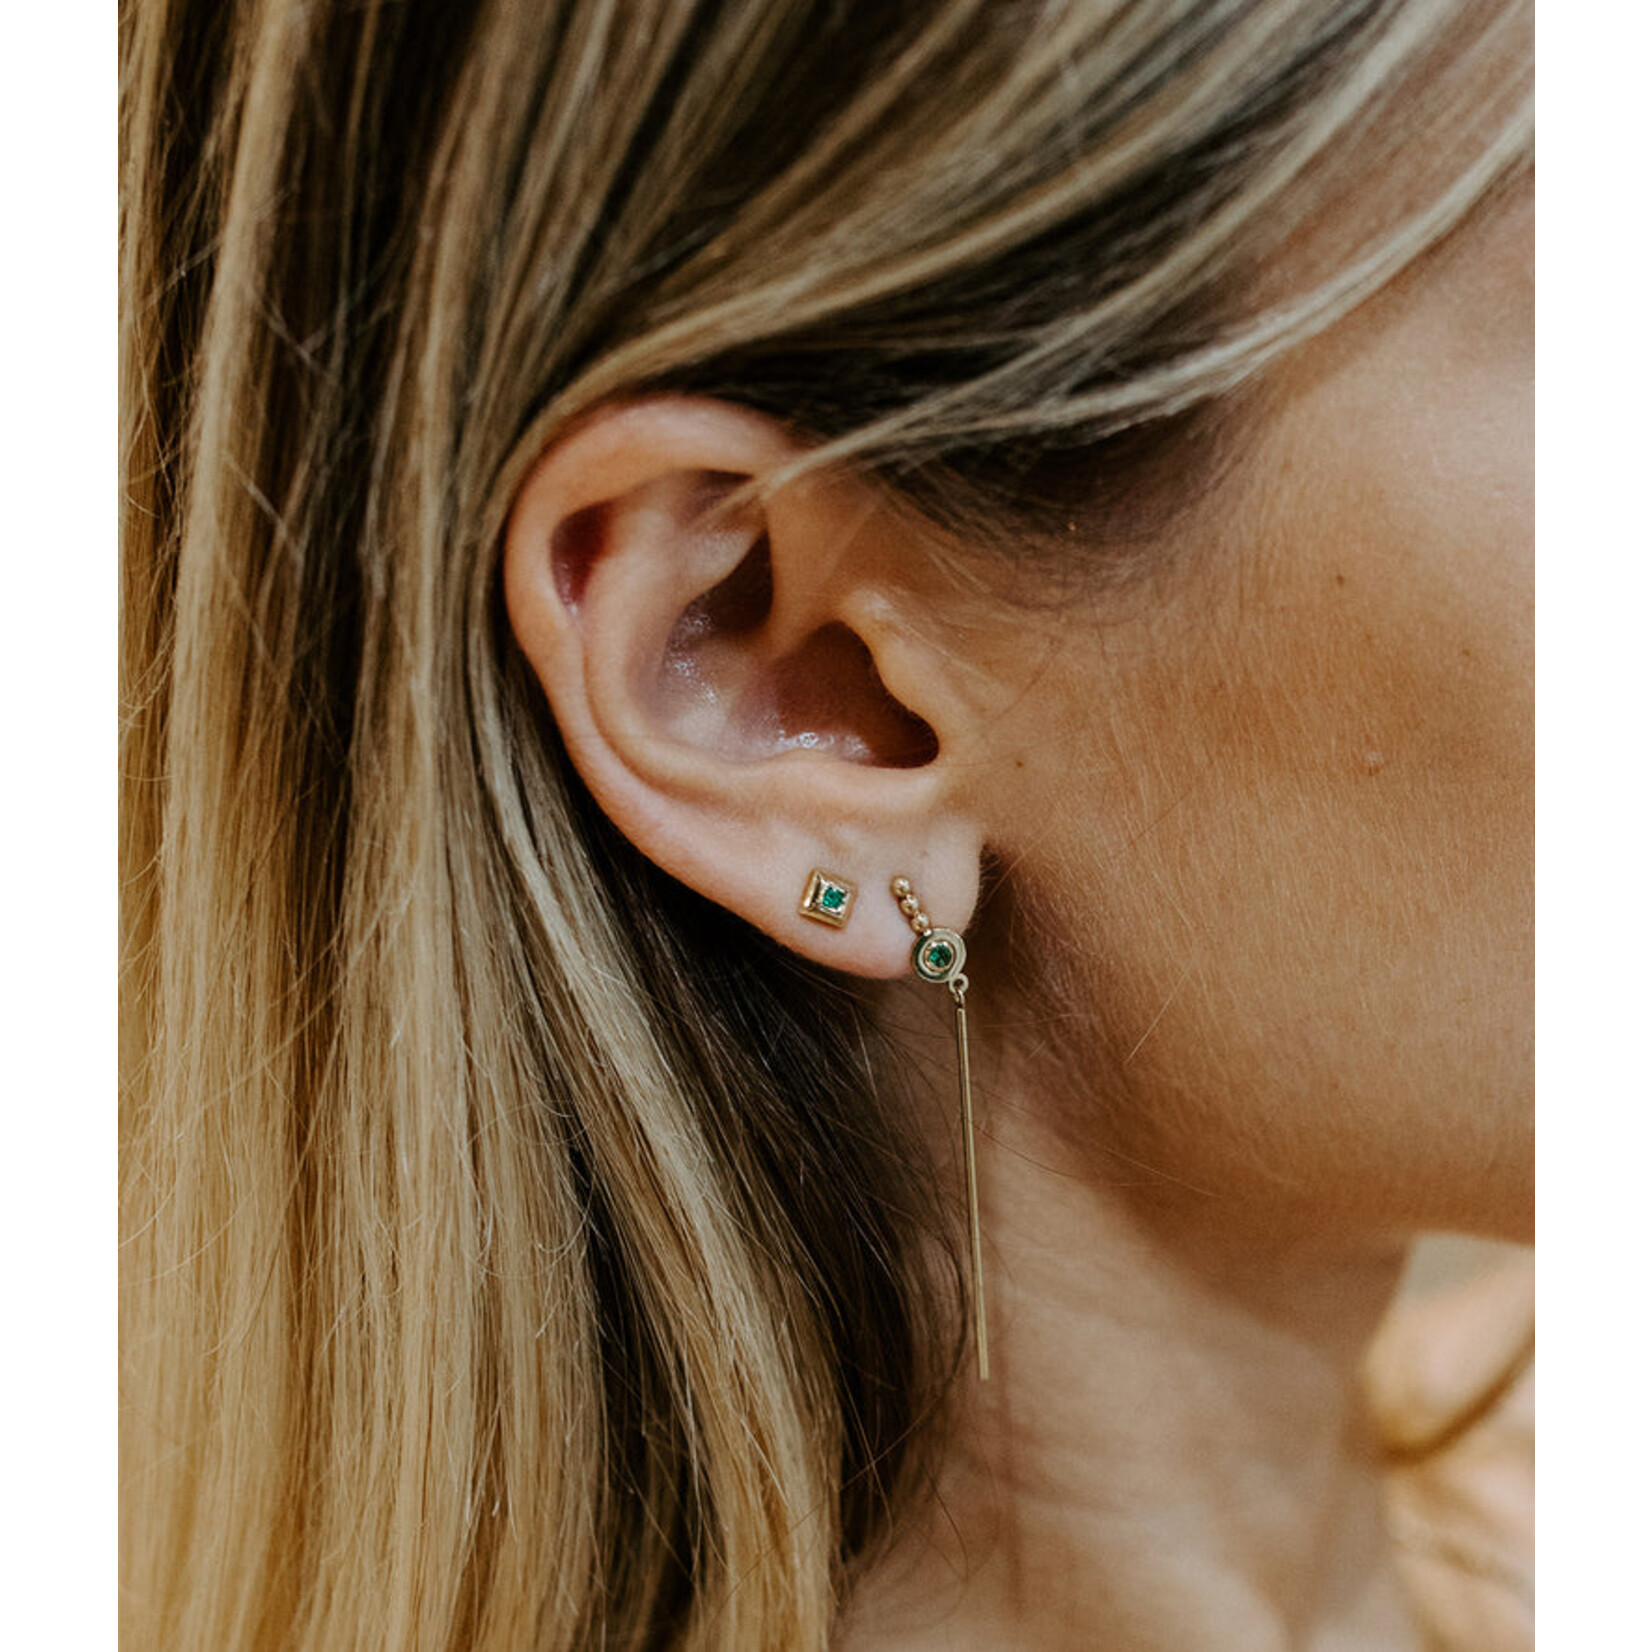 ZAG Bijoux Noa earrings